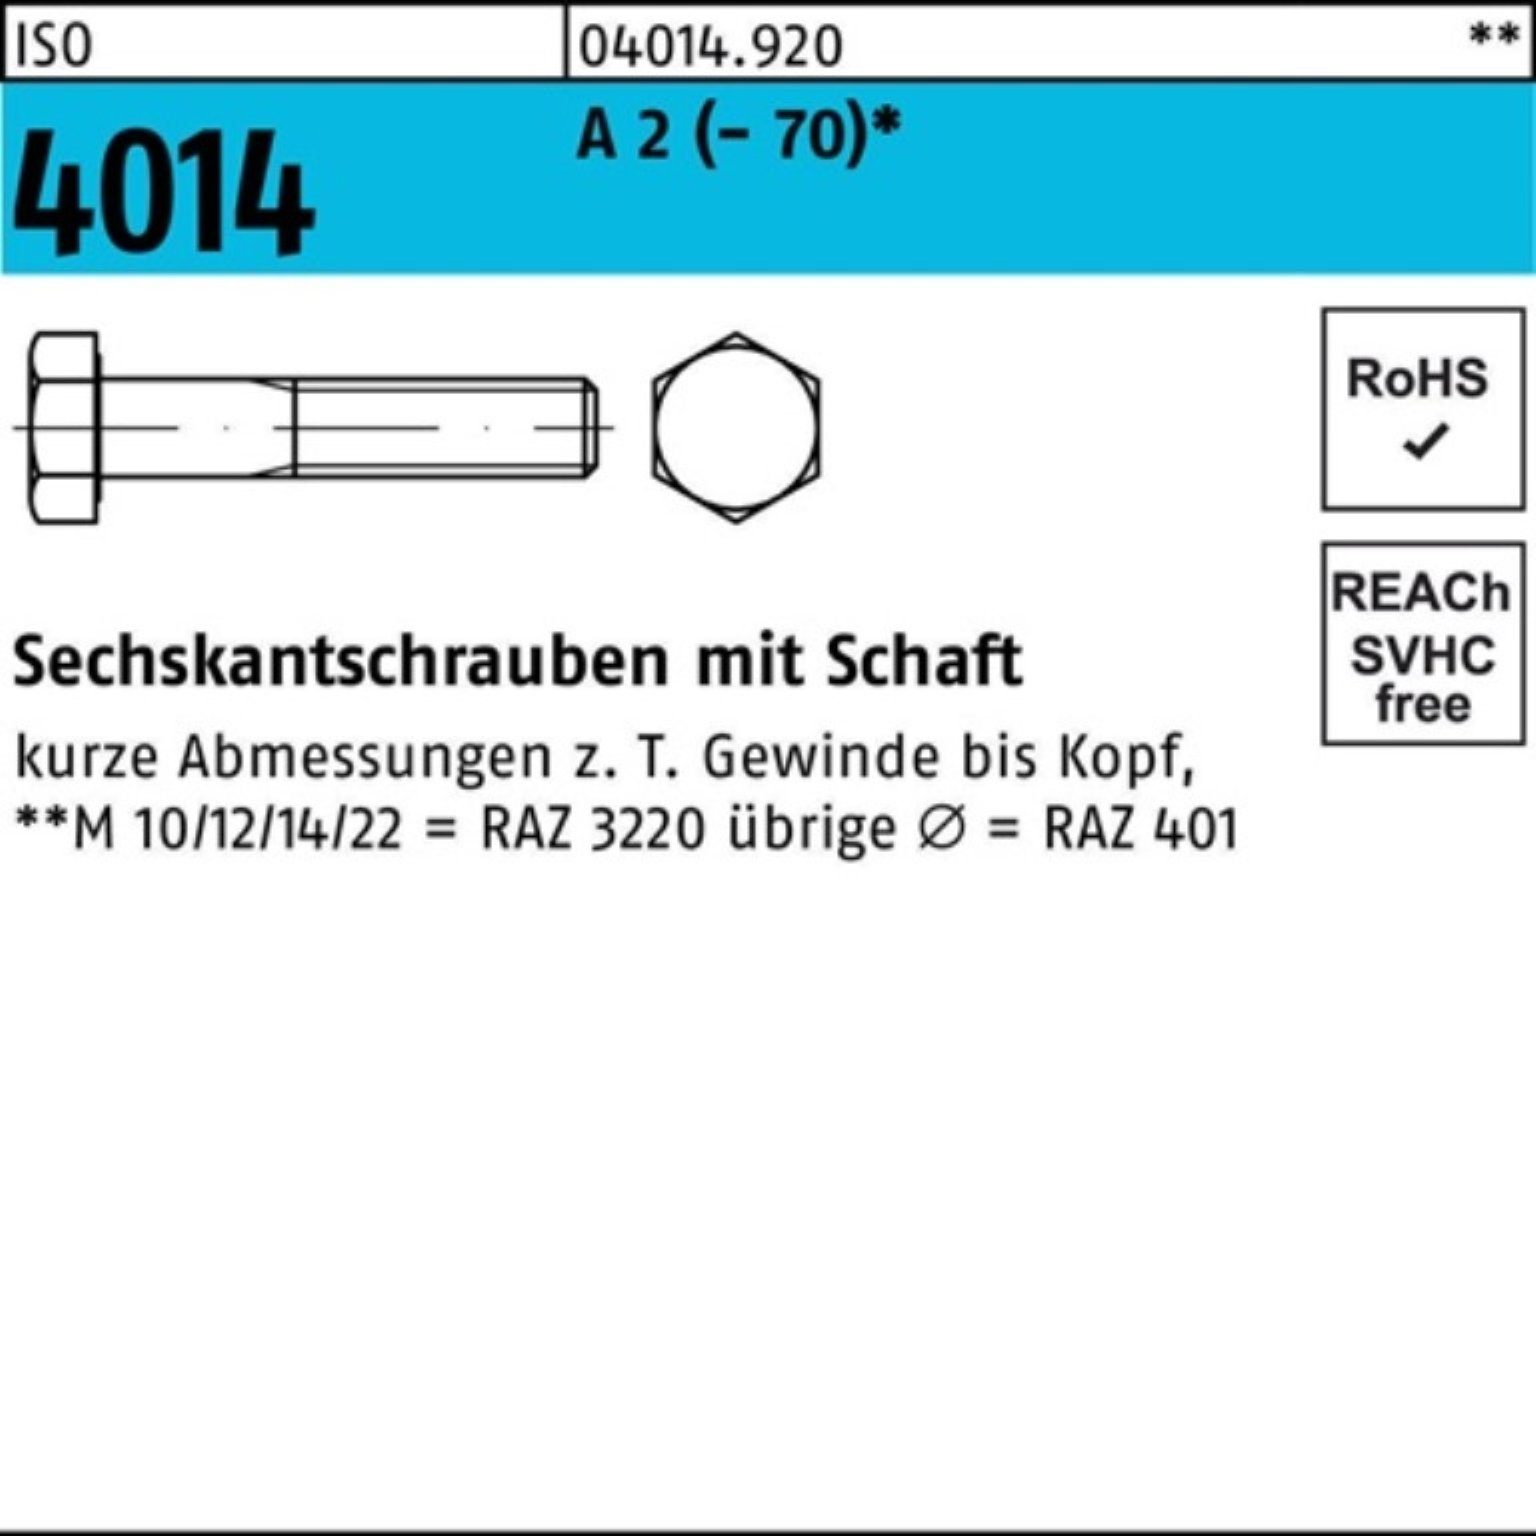 Bufab Sechskantschraube 100er Pack Sechskantschraube ISO 4014 Schaft M6x 75 A 2 (70) 100 St